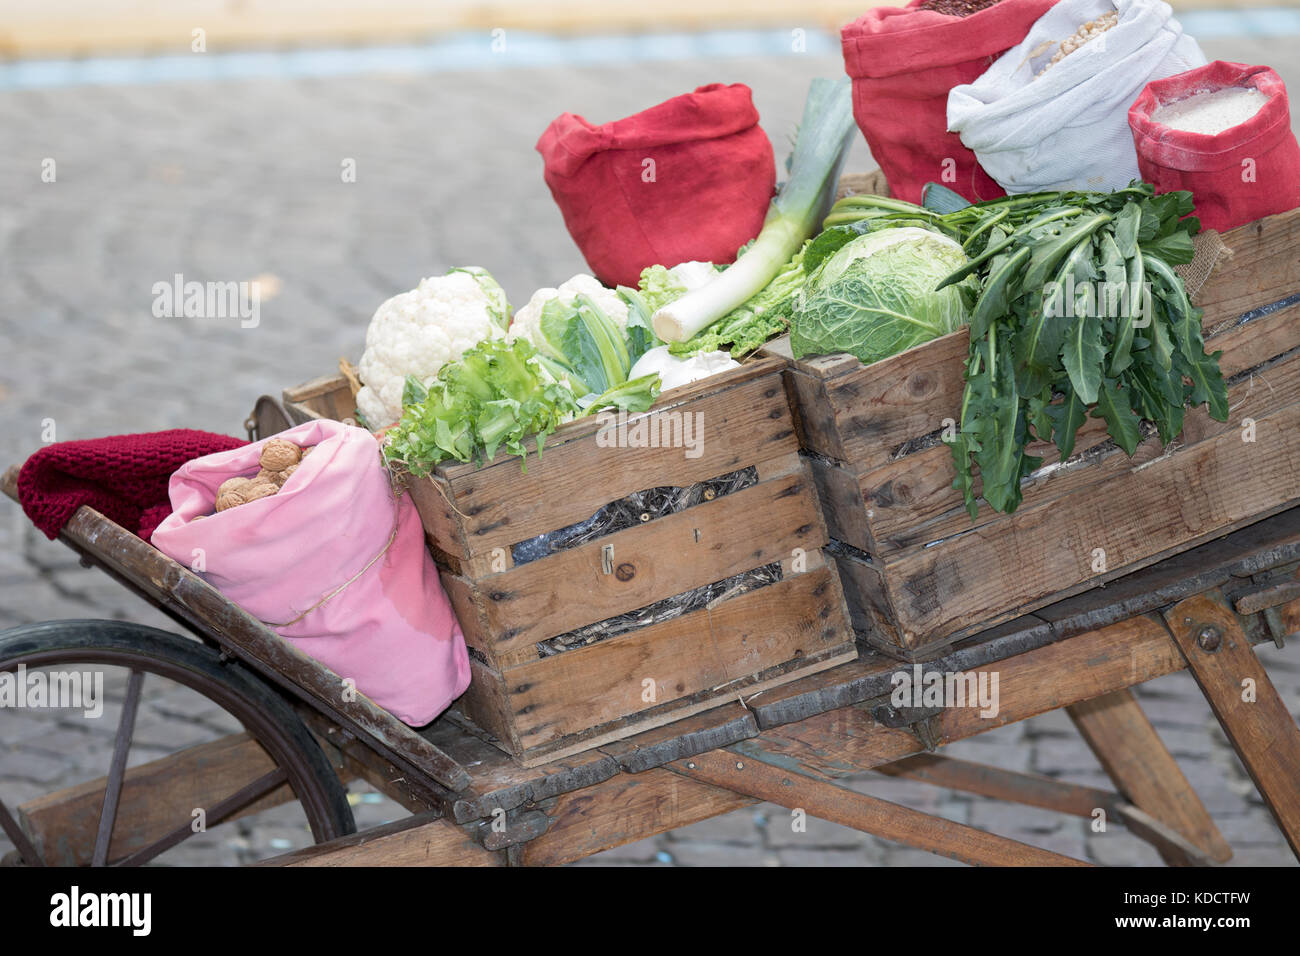 Asti, Italy - September 10, 2017: wooden cassettes full of cauliflowers on an old wooden wheelbarrow Stock Photo